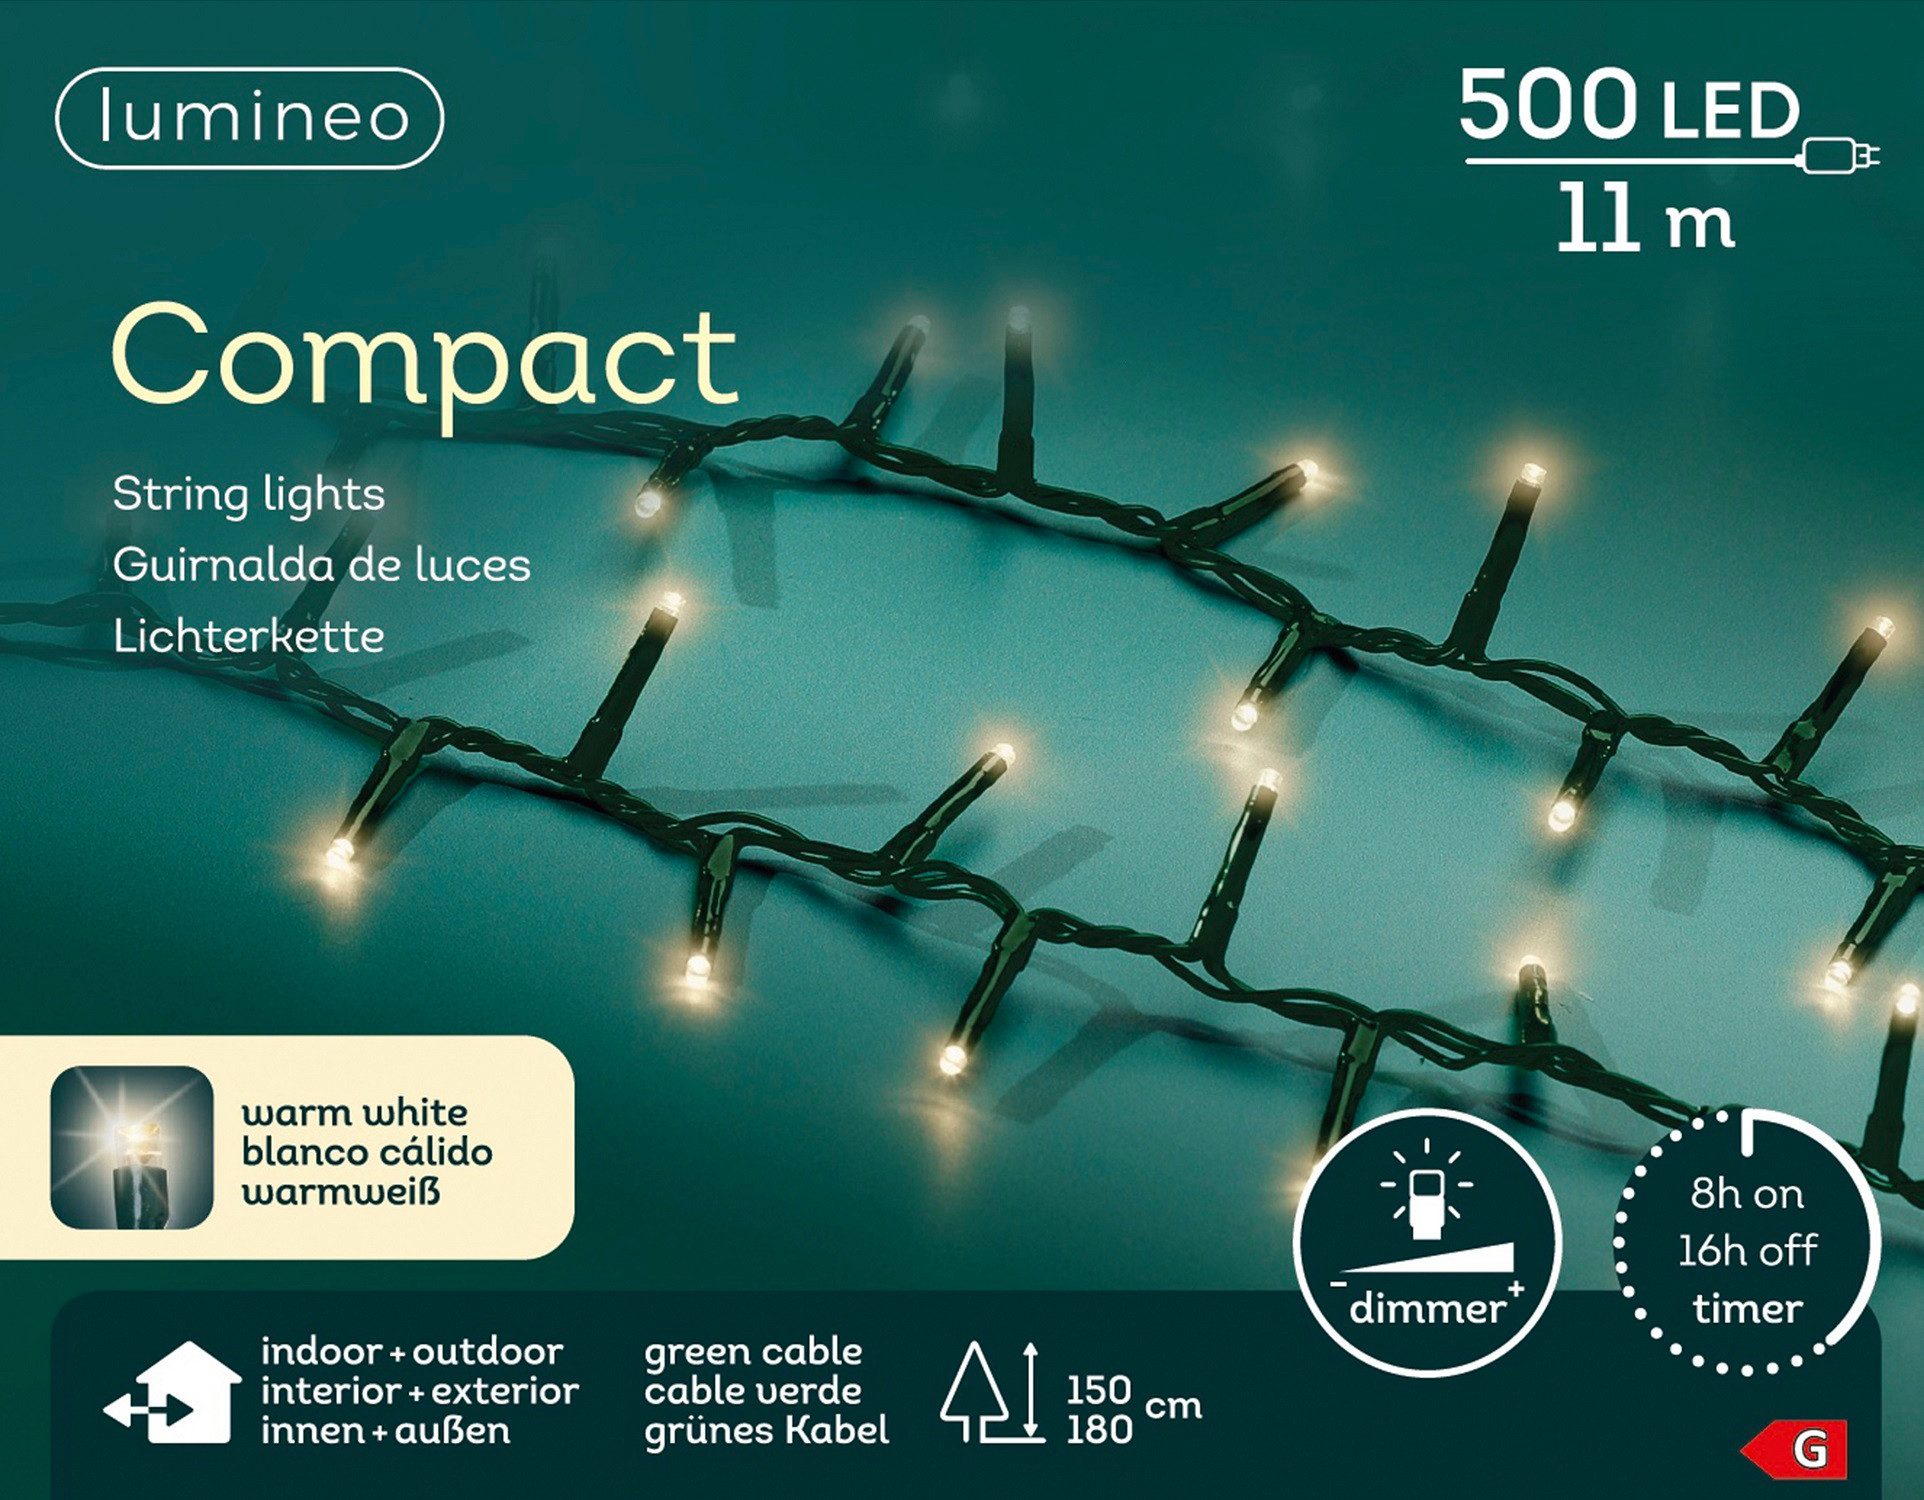 Lumineo LED-Lichterkette »Compact 500 LED's 11m warmweiß, grünes Kabel«,  für 1,5 - 1,8 Meter Bäume, Indoor & Outdoor geeignet, dimmbar mit 8h-Timer  online kaufen | OTTO